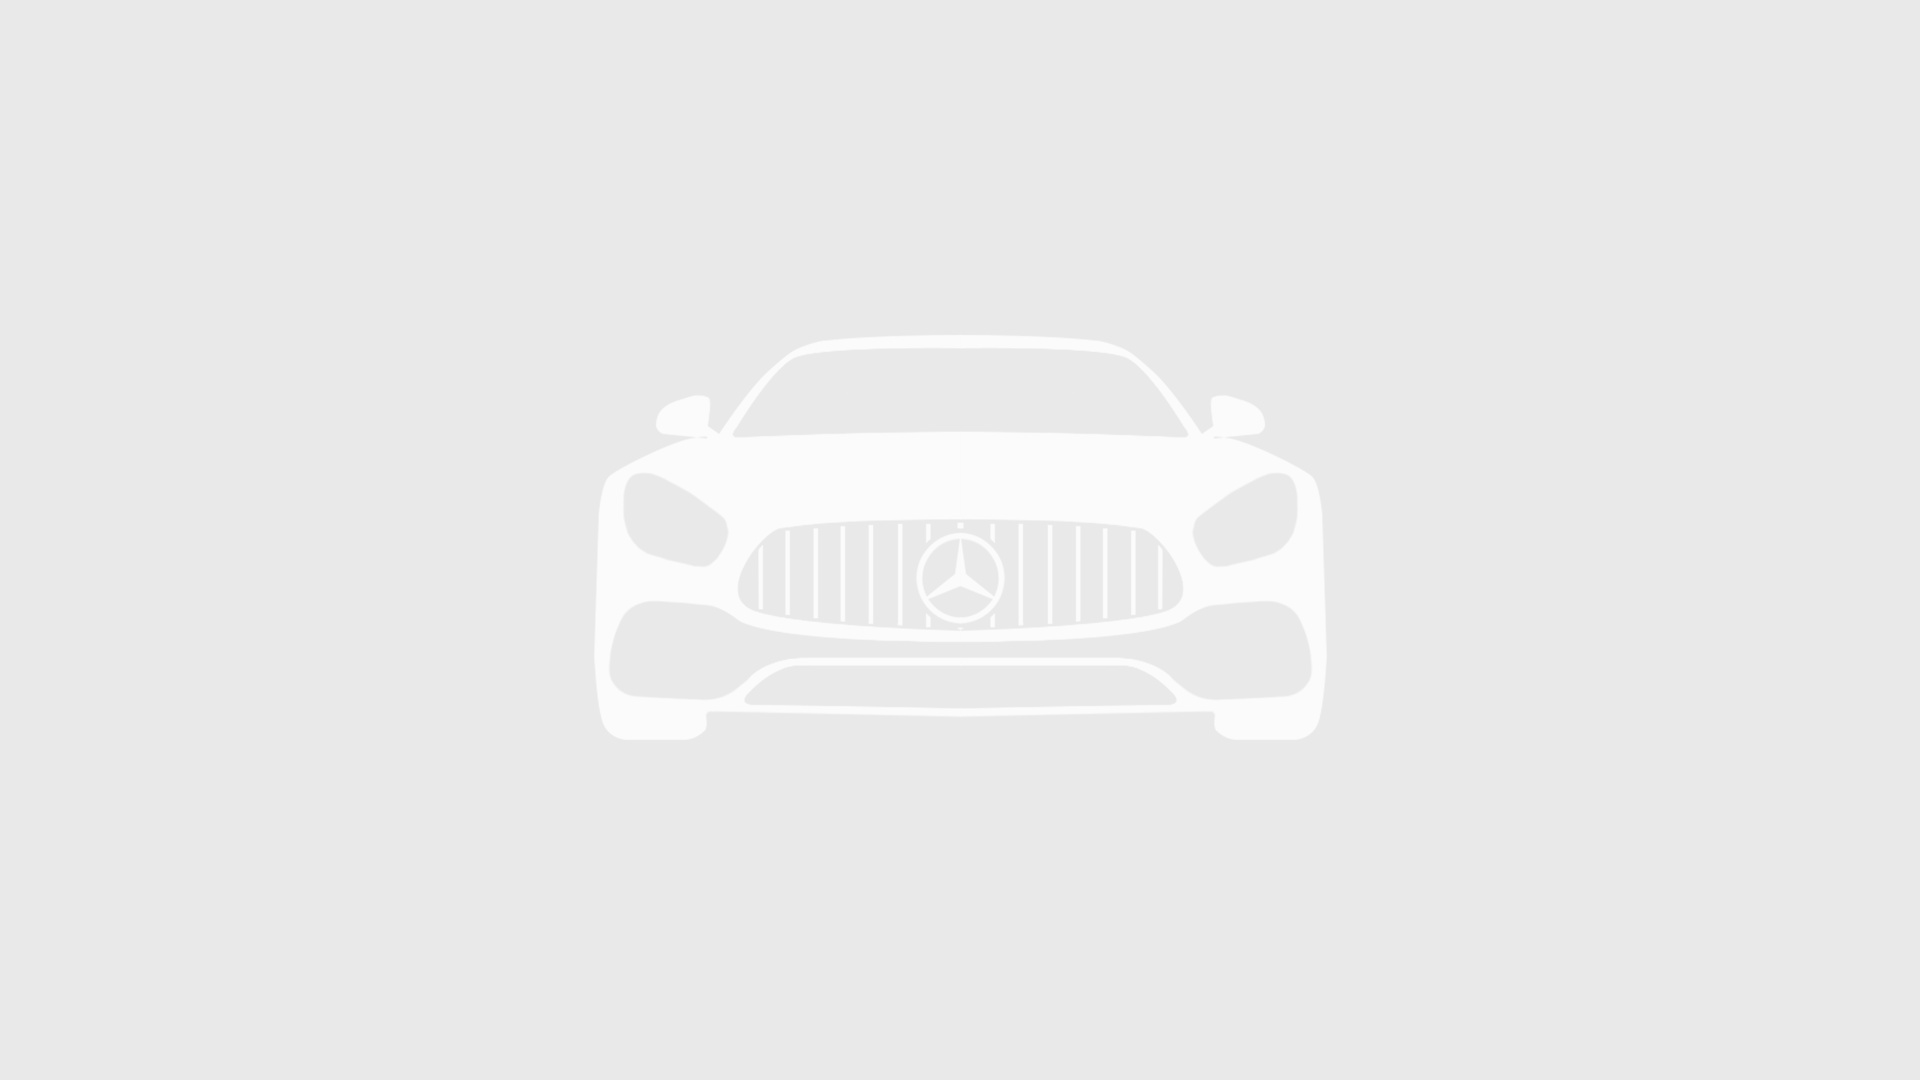 Mercedes-Benz комплектация Avantgarde / E 250 d двигатель 2.1 литра (190 л.с.) Черный